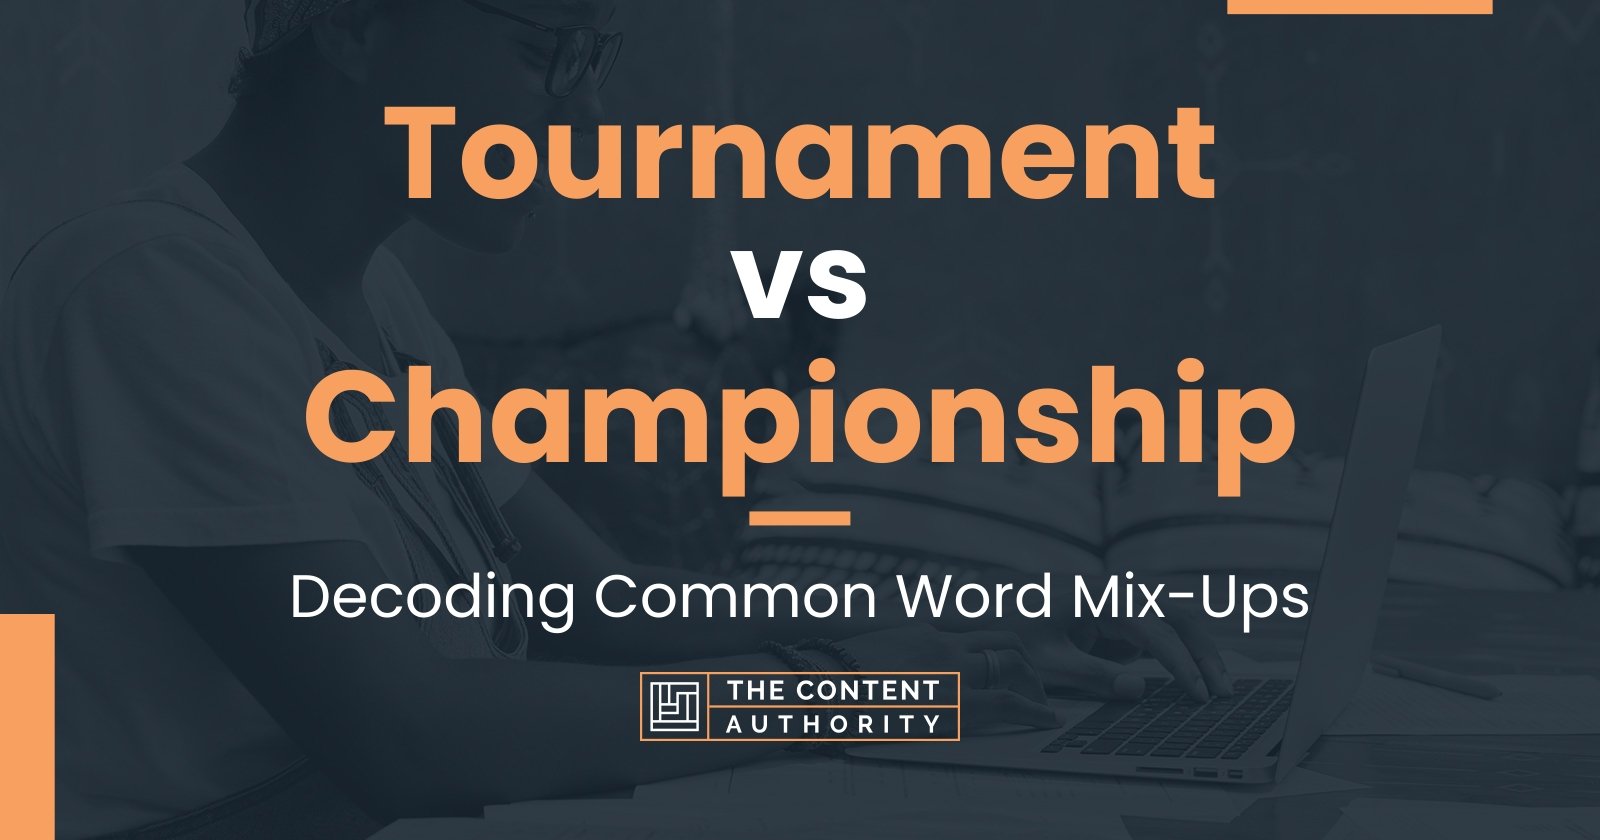 Qual é a diferença entre tournament e championship ?